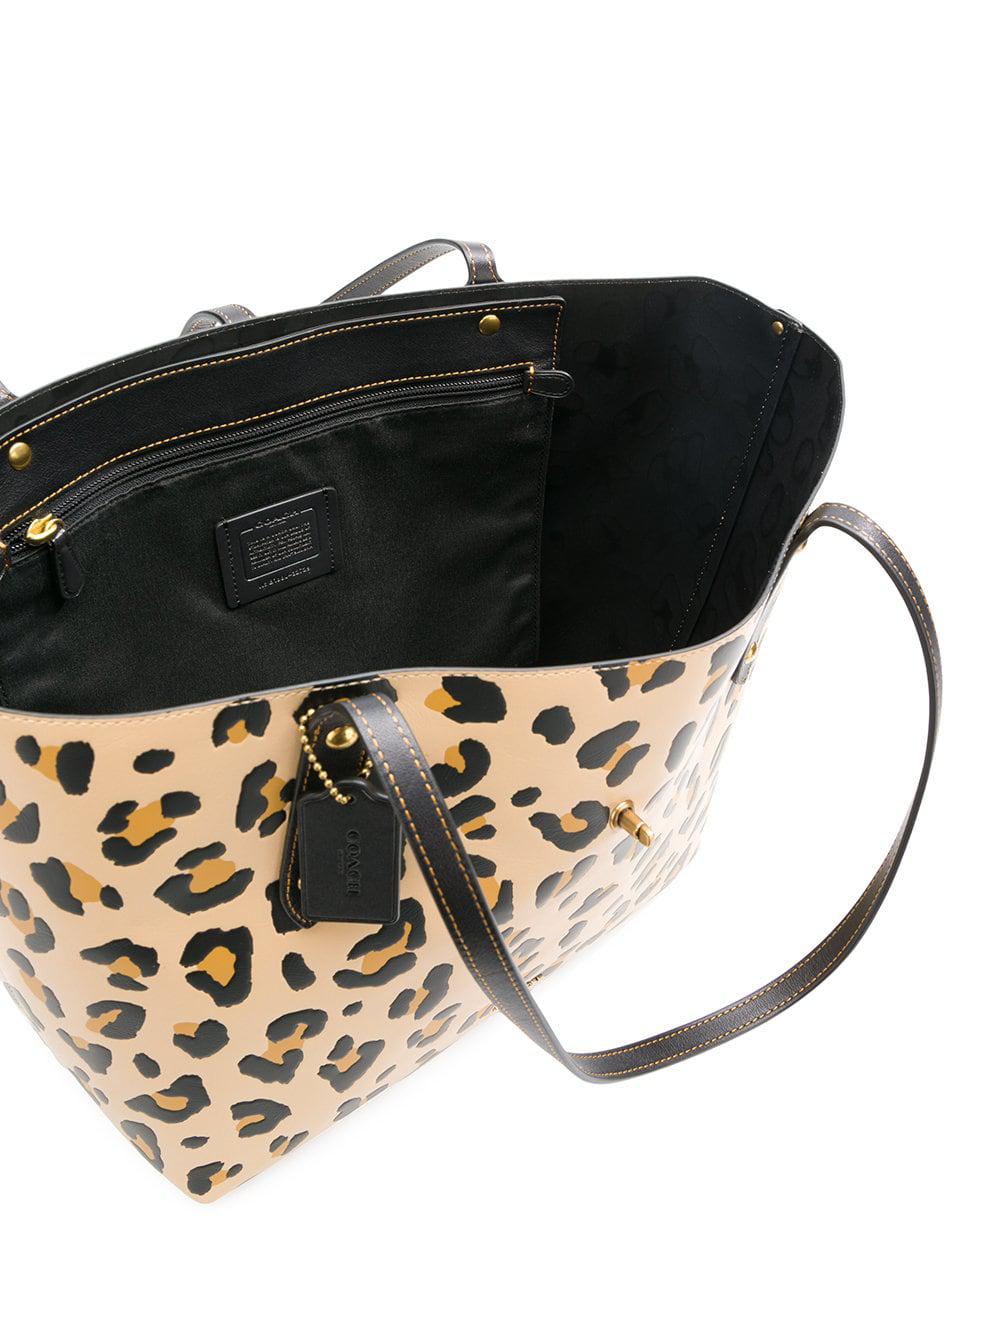 COACH Bandit Leopard Print Shoulder Crossbody Bag | Dillard's